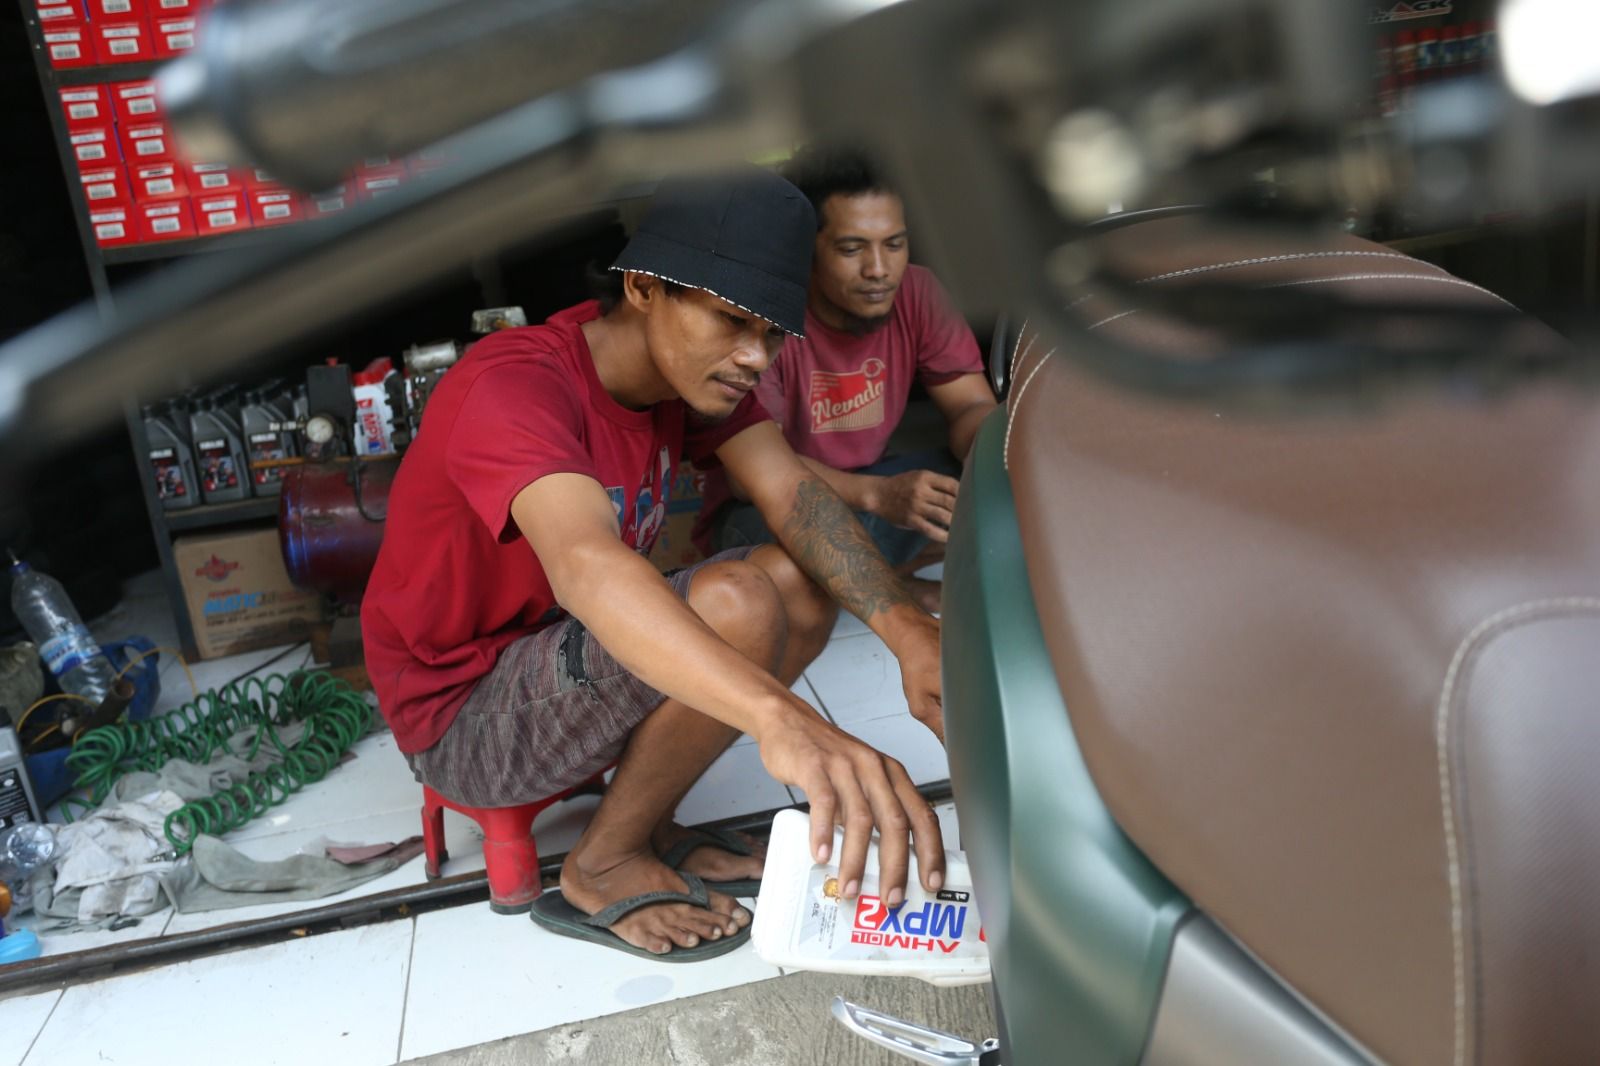 Karyawan Bengkel Motor Kamson sedang mengganti oli kendaraan salah seorang pelanggannya di daerah Paku Haji, Kabupaten Tangerang, Banten pada Kamis (21/12/2023).

Bengkel Motor Kamson merupakan salah satu unit usaha yang dipercaya untuk mendapatkan manfaat pendanaan dari platform Fintech Peer-to-Peer (P2P) Lending EasyCash. Melalui modal usaha yang didapatkanya dari EasyCash tersebut, kini Bengkel Motor Kamson telah berhasil membuka 4 cabang bengkel di wilayah Tangerang dengan mempekerjakan 1 karyawan di setiap cabangnya. Bengkel Motor Kamson mampu memperoleh omset kurang lebih mencapai Rp 30 juta per bulan dari ketiga cabang bengkelnya yang sudah berjalan lebih dulu.